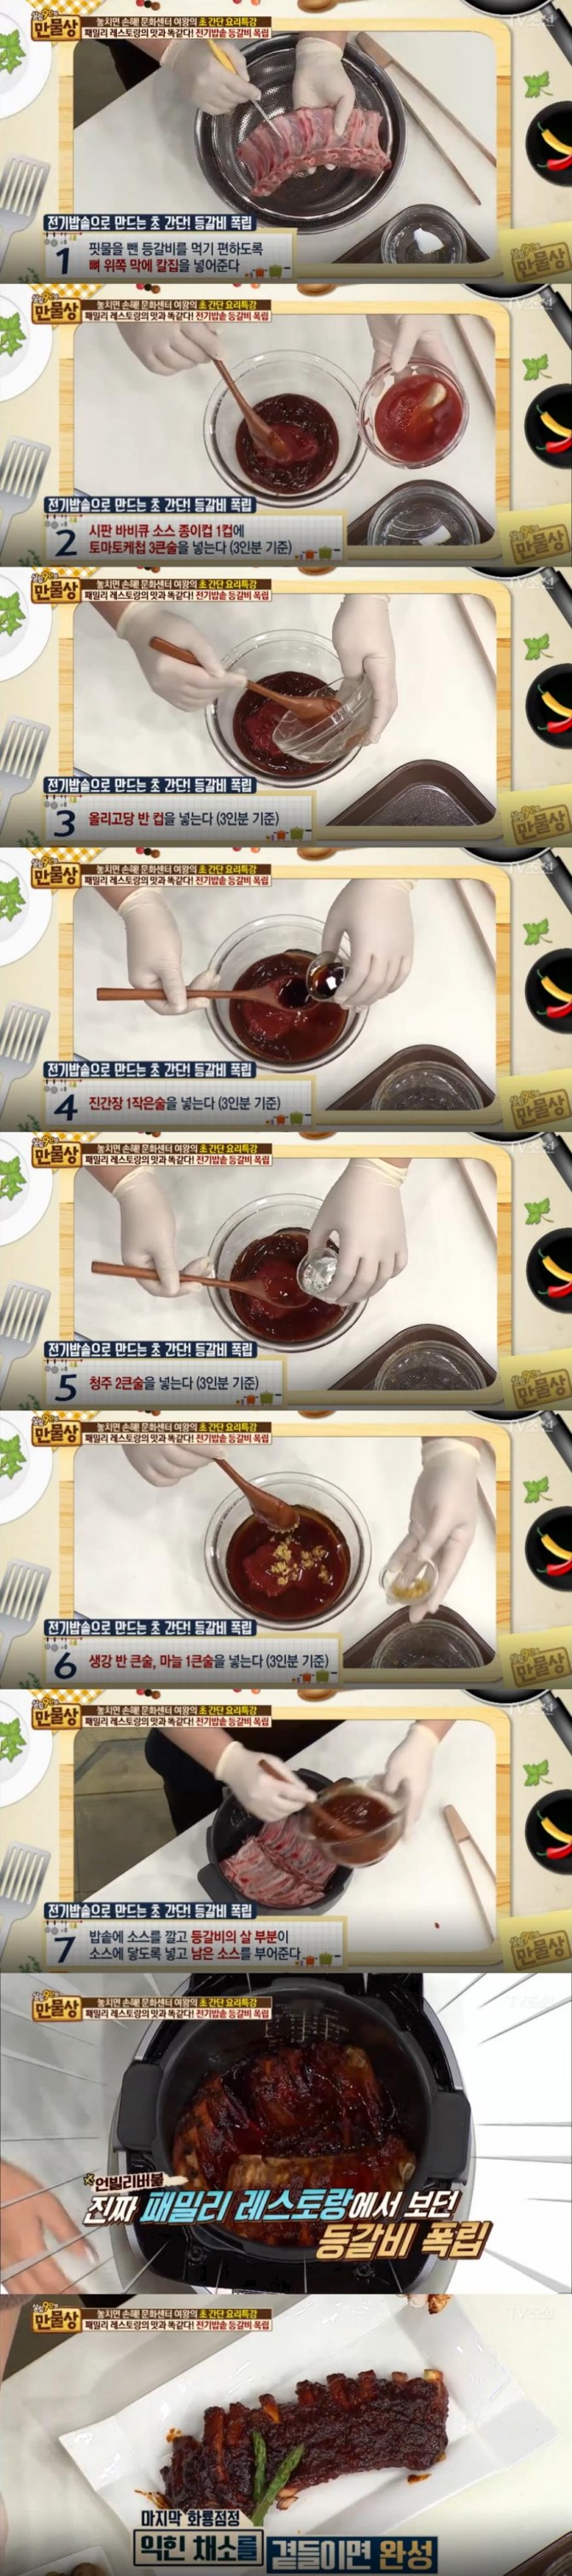 15일 방송된 TV 조선 '살림 9단의 만물상'에서는 전기밥솥을 이용한 초간단 등갈비 폭립 만드는 방법이 소개됐다./사진=TV조선 방송 캡처